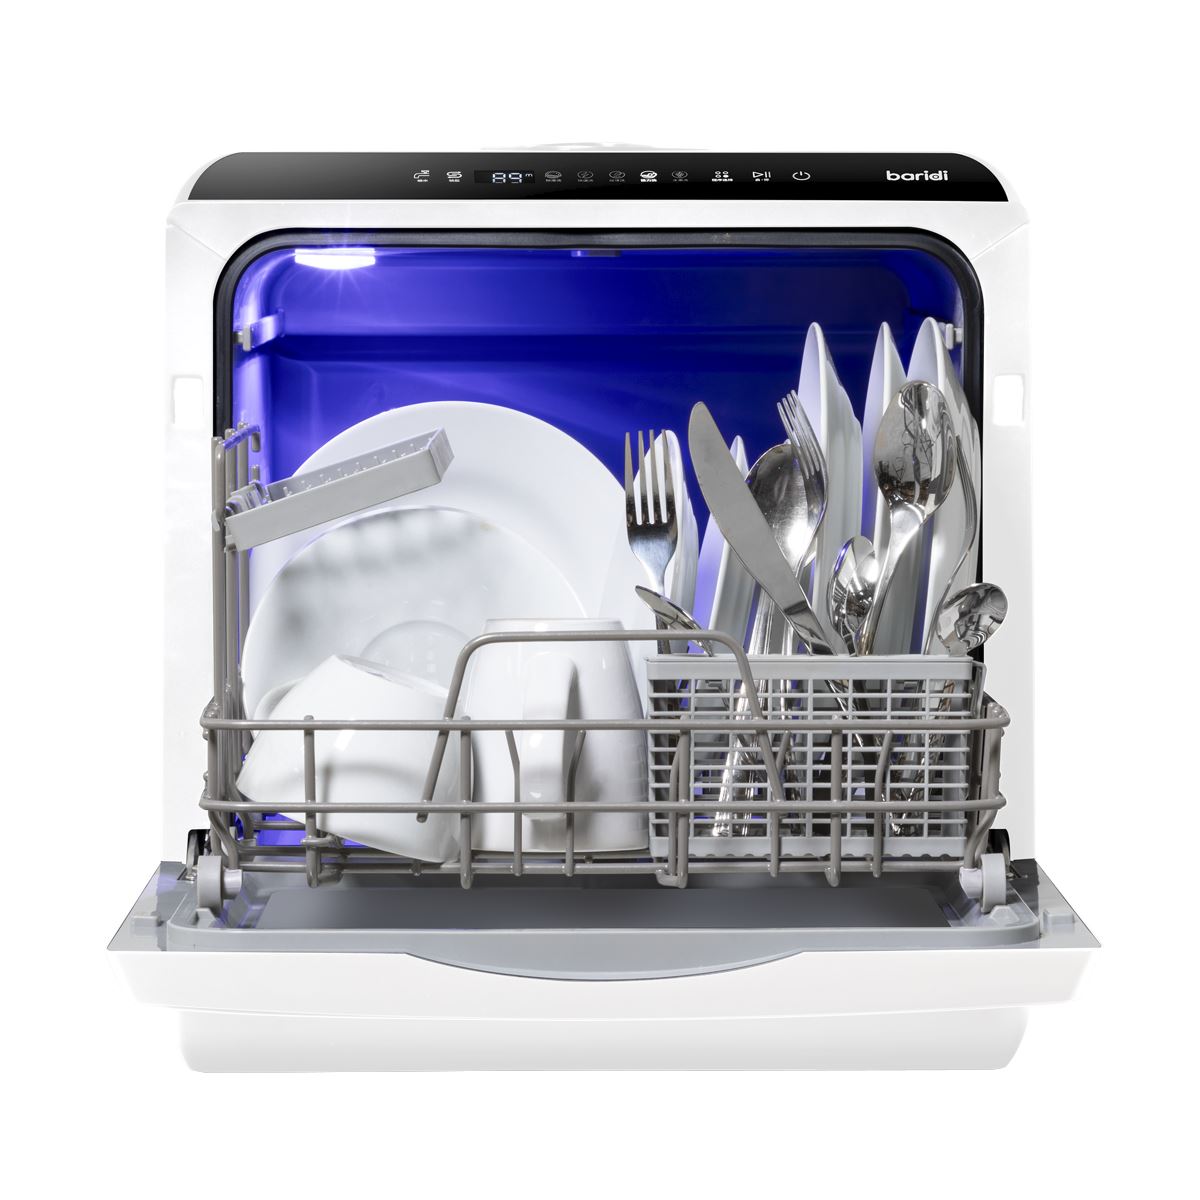 Baridi 2-4 Place Settings Mini Portable Tabletop Dishwasher, 5 Wash Functions